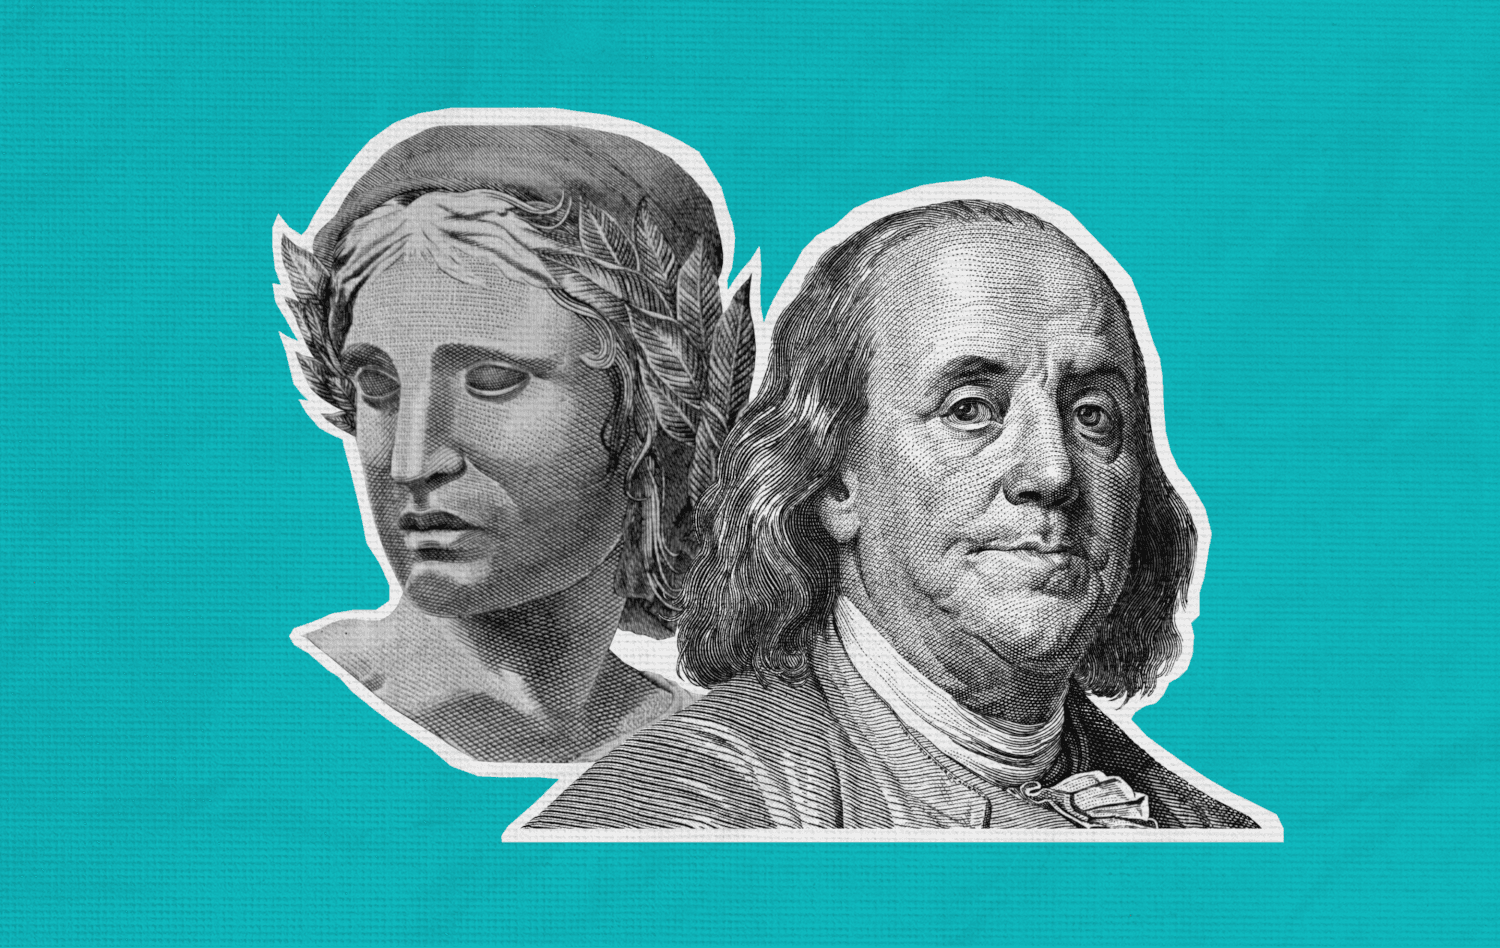 Fundo azul com destaque à efígie simbólica da nota do real e a George Washington, figura impressa nas notas de dólar.